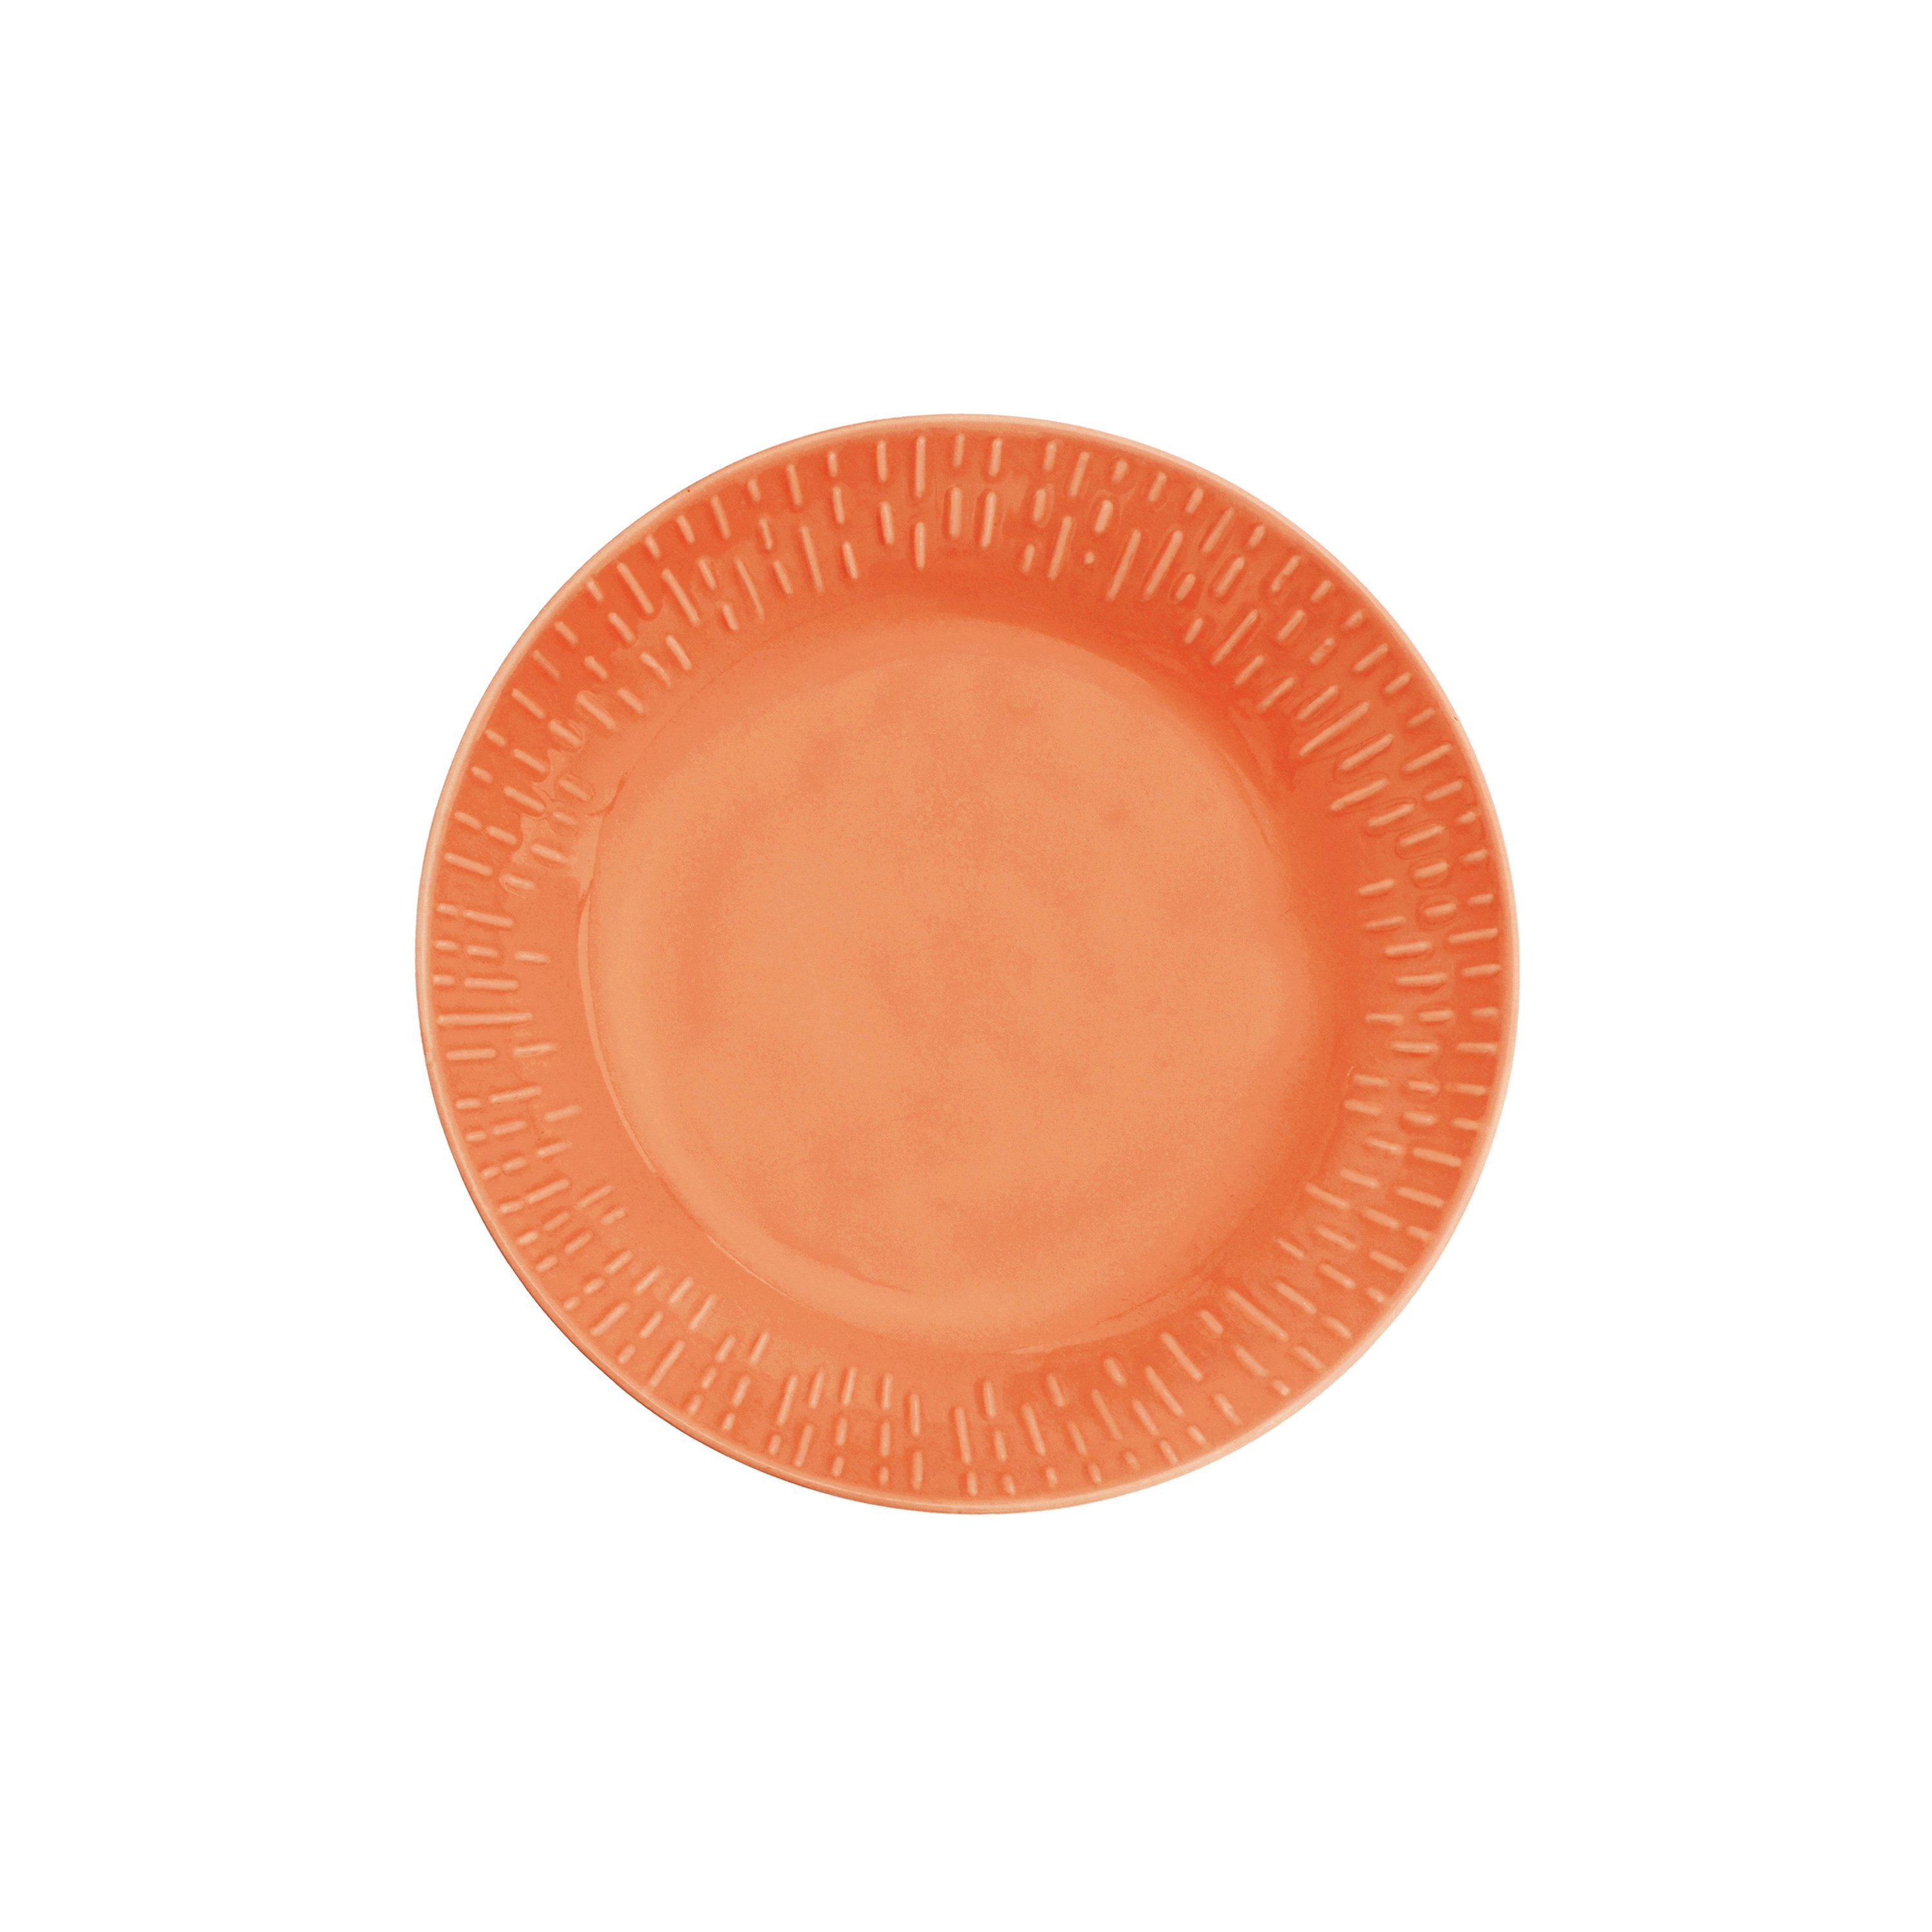 Aida - Life in Colour - Confetti - Apricot pasta plate w/relief porcelain (13324) - Hjemme og kjøkken